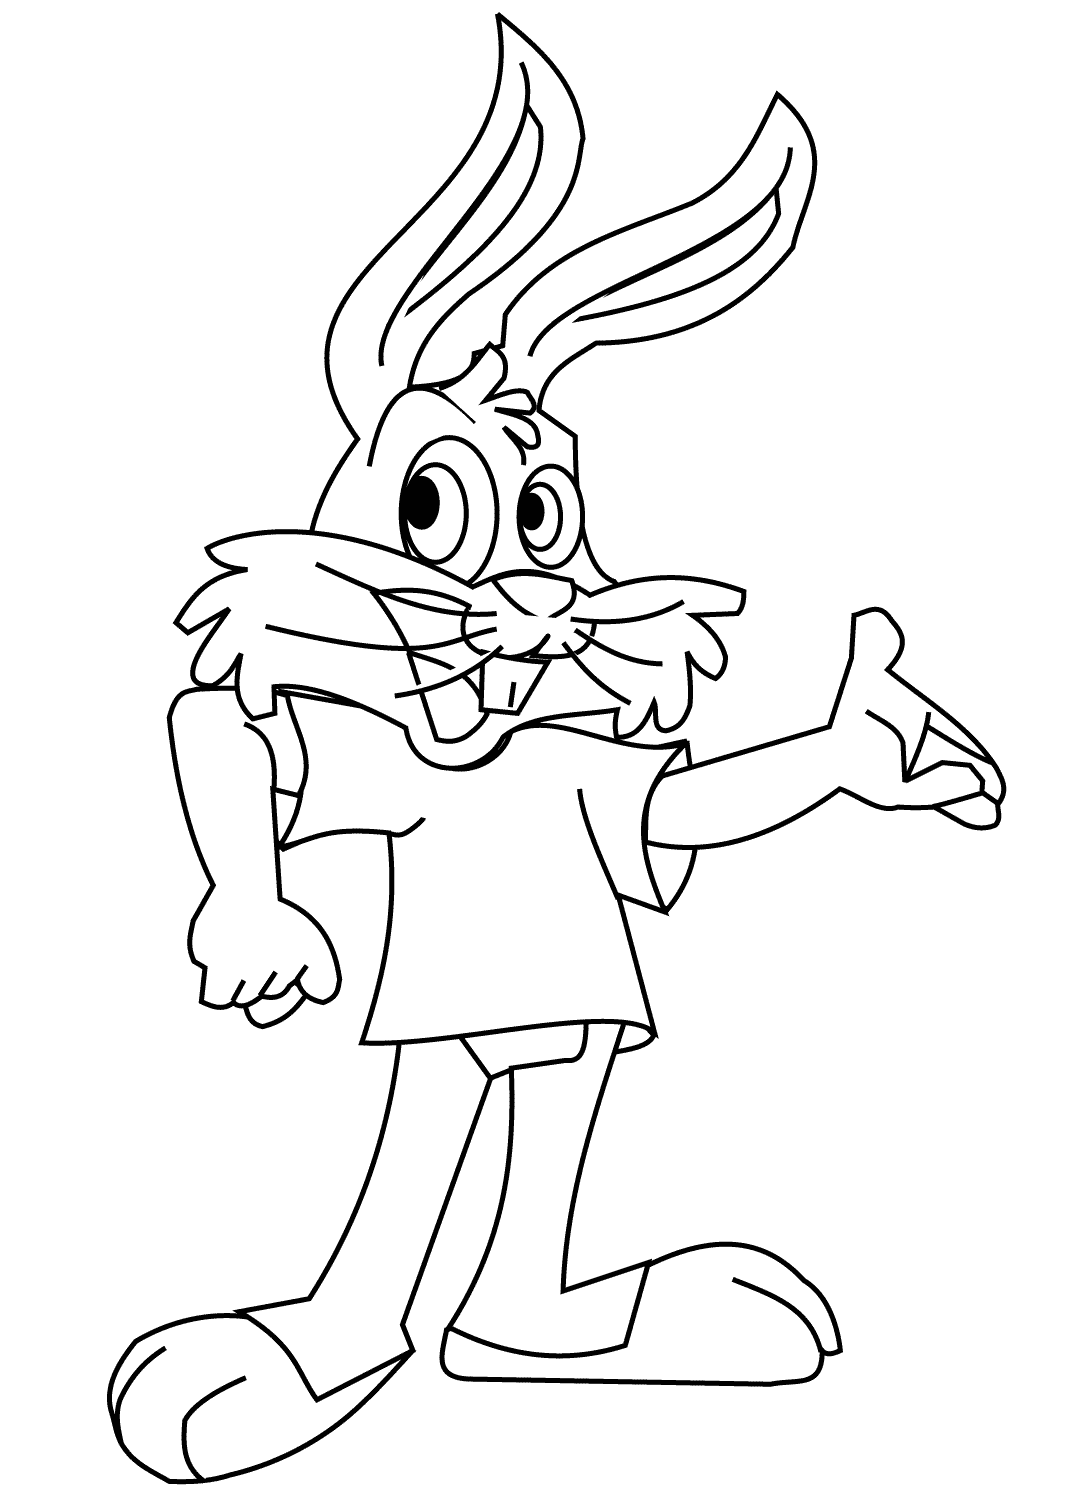 Coelho engraçado de desenho animado usa uma camisa da Bunny